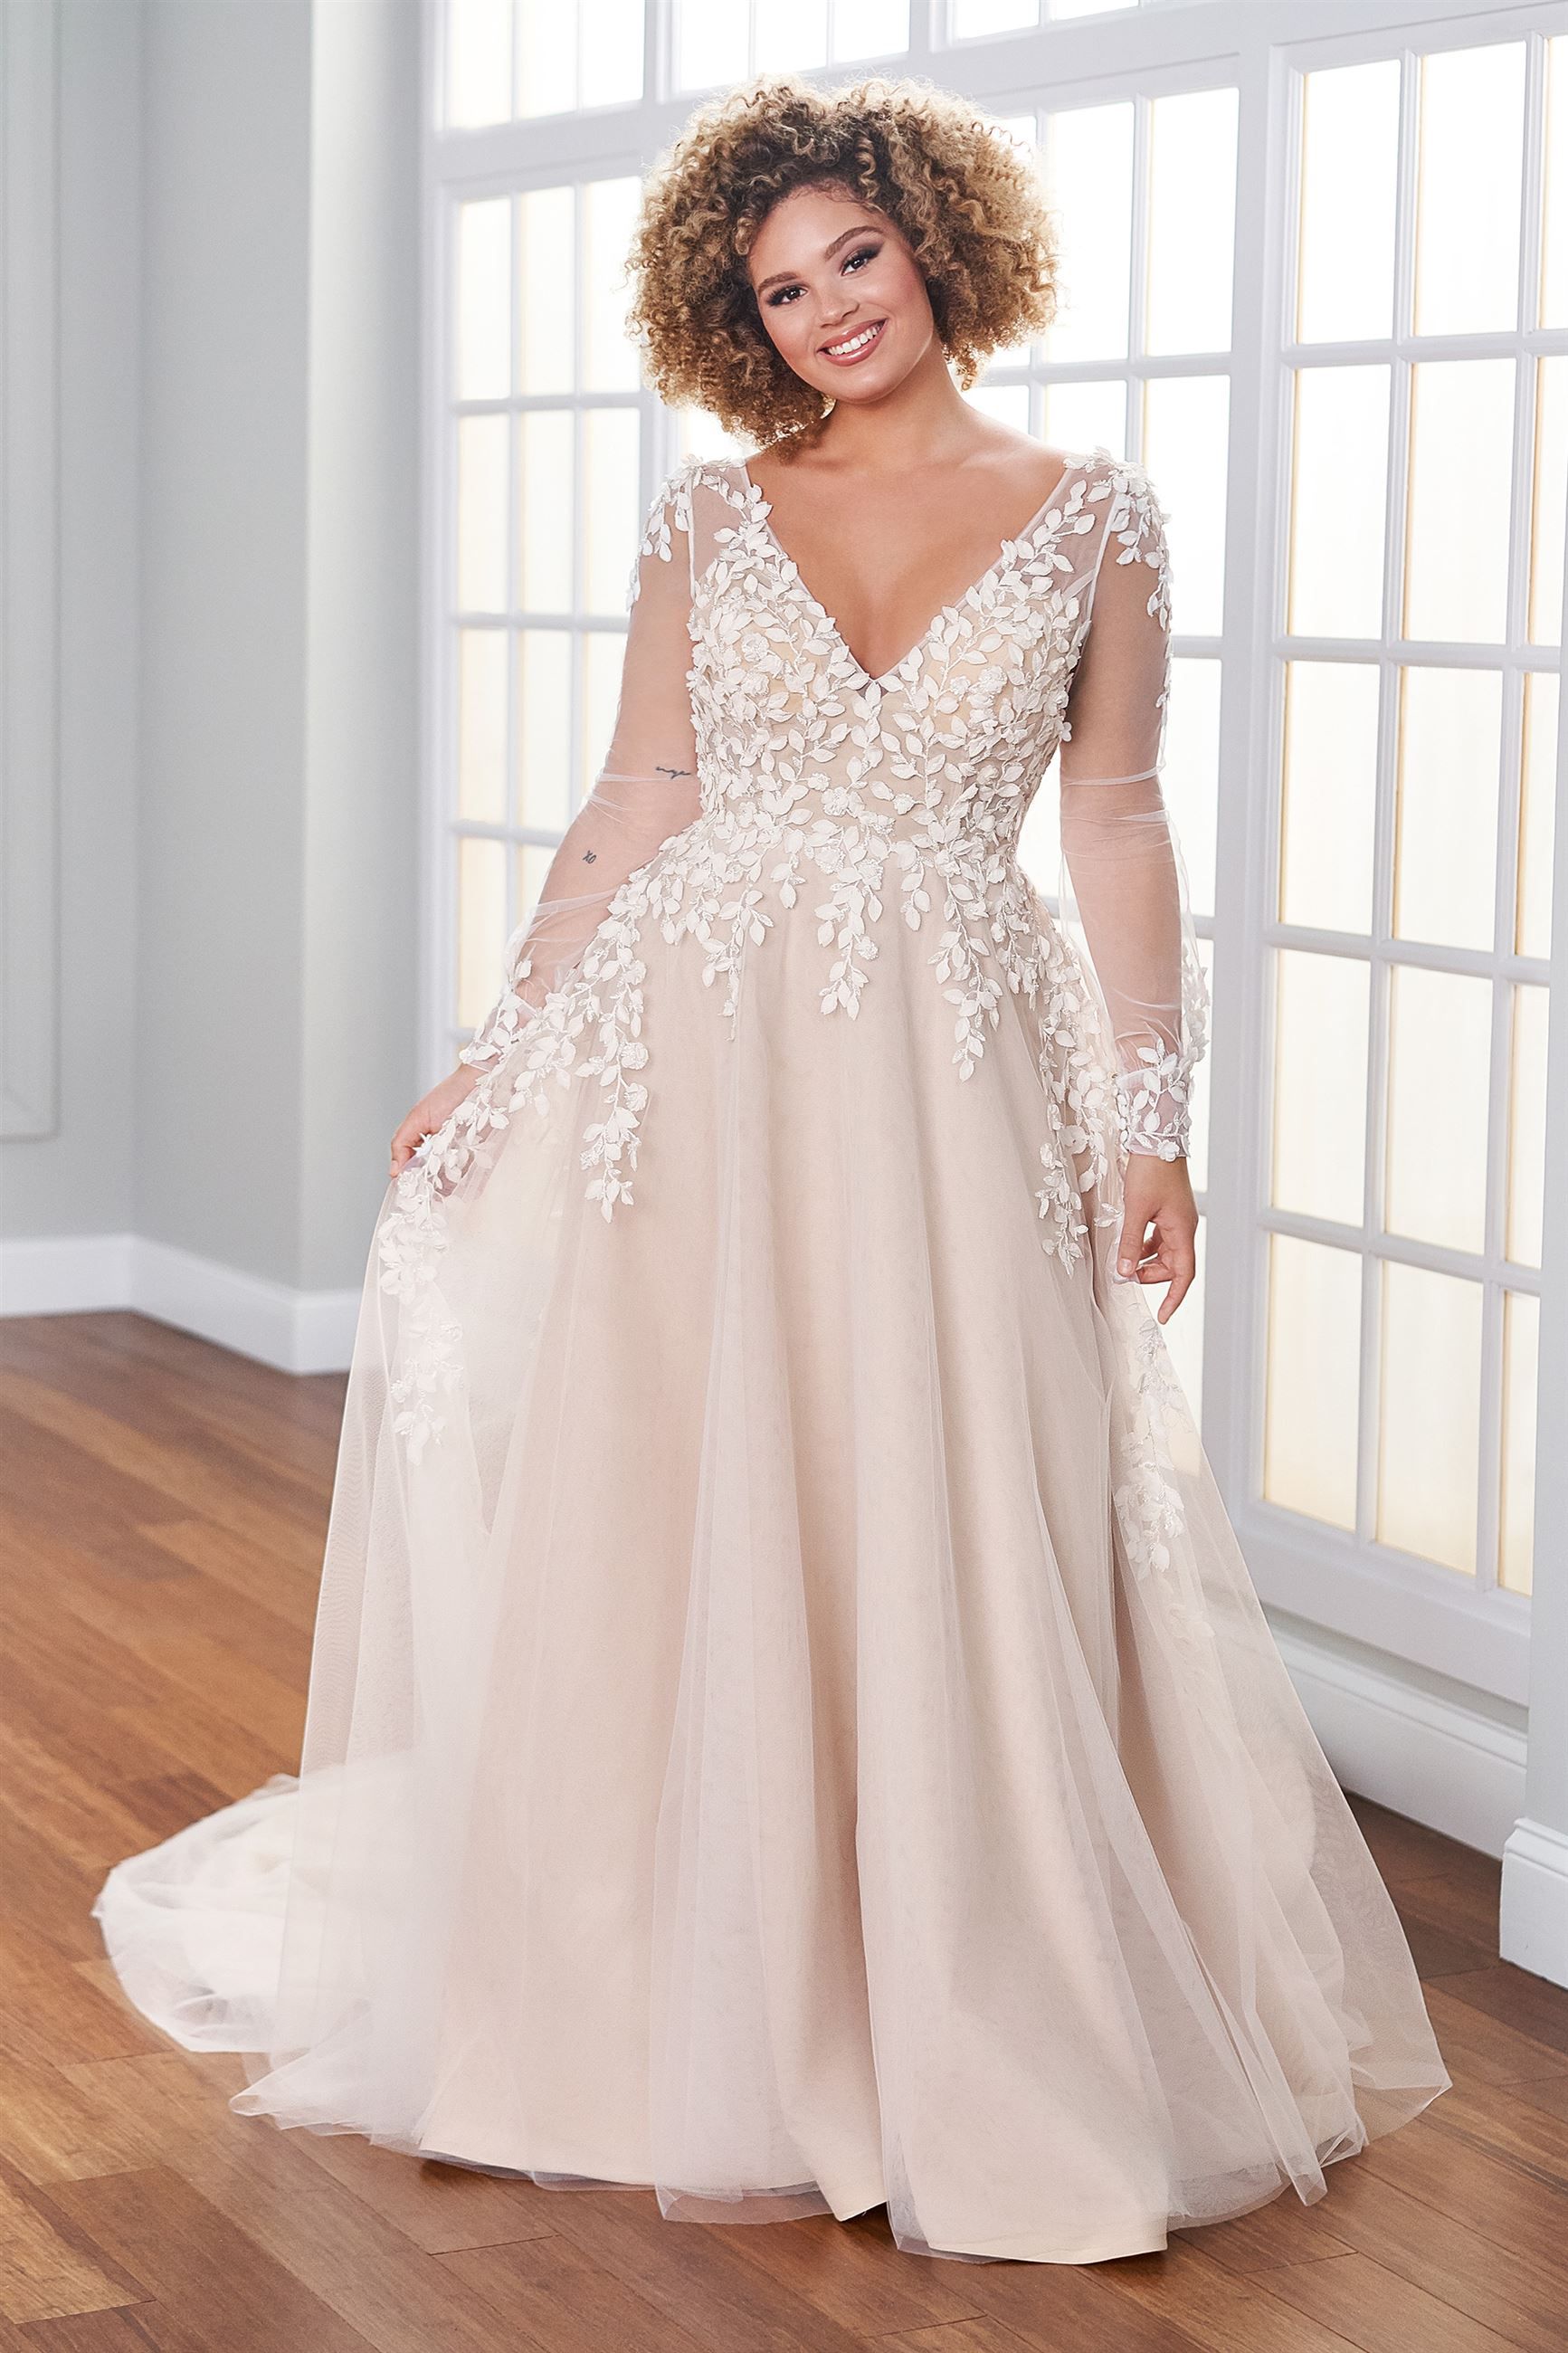 https://madamebridal.com/media/catalog/product/cache/83365d7c8fe98a8de86f2f82672e44c8/m/a/martin-thornburg-221203w-blaye-illusion-sleeve-plus-size-wedding-dress-01.885.jpg